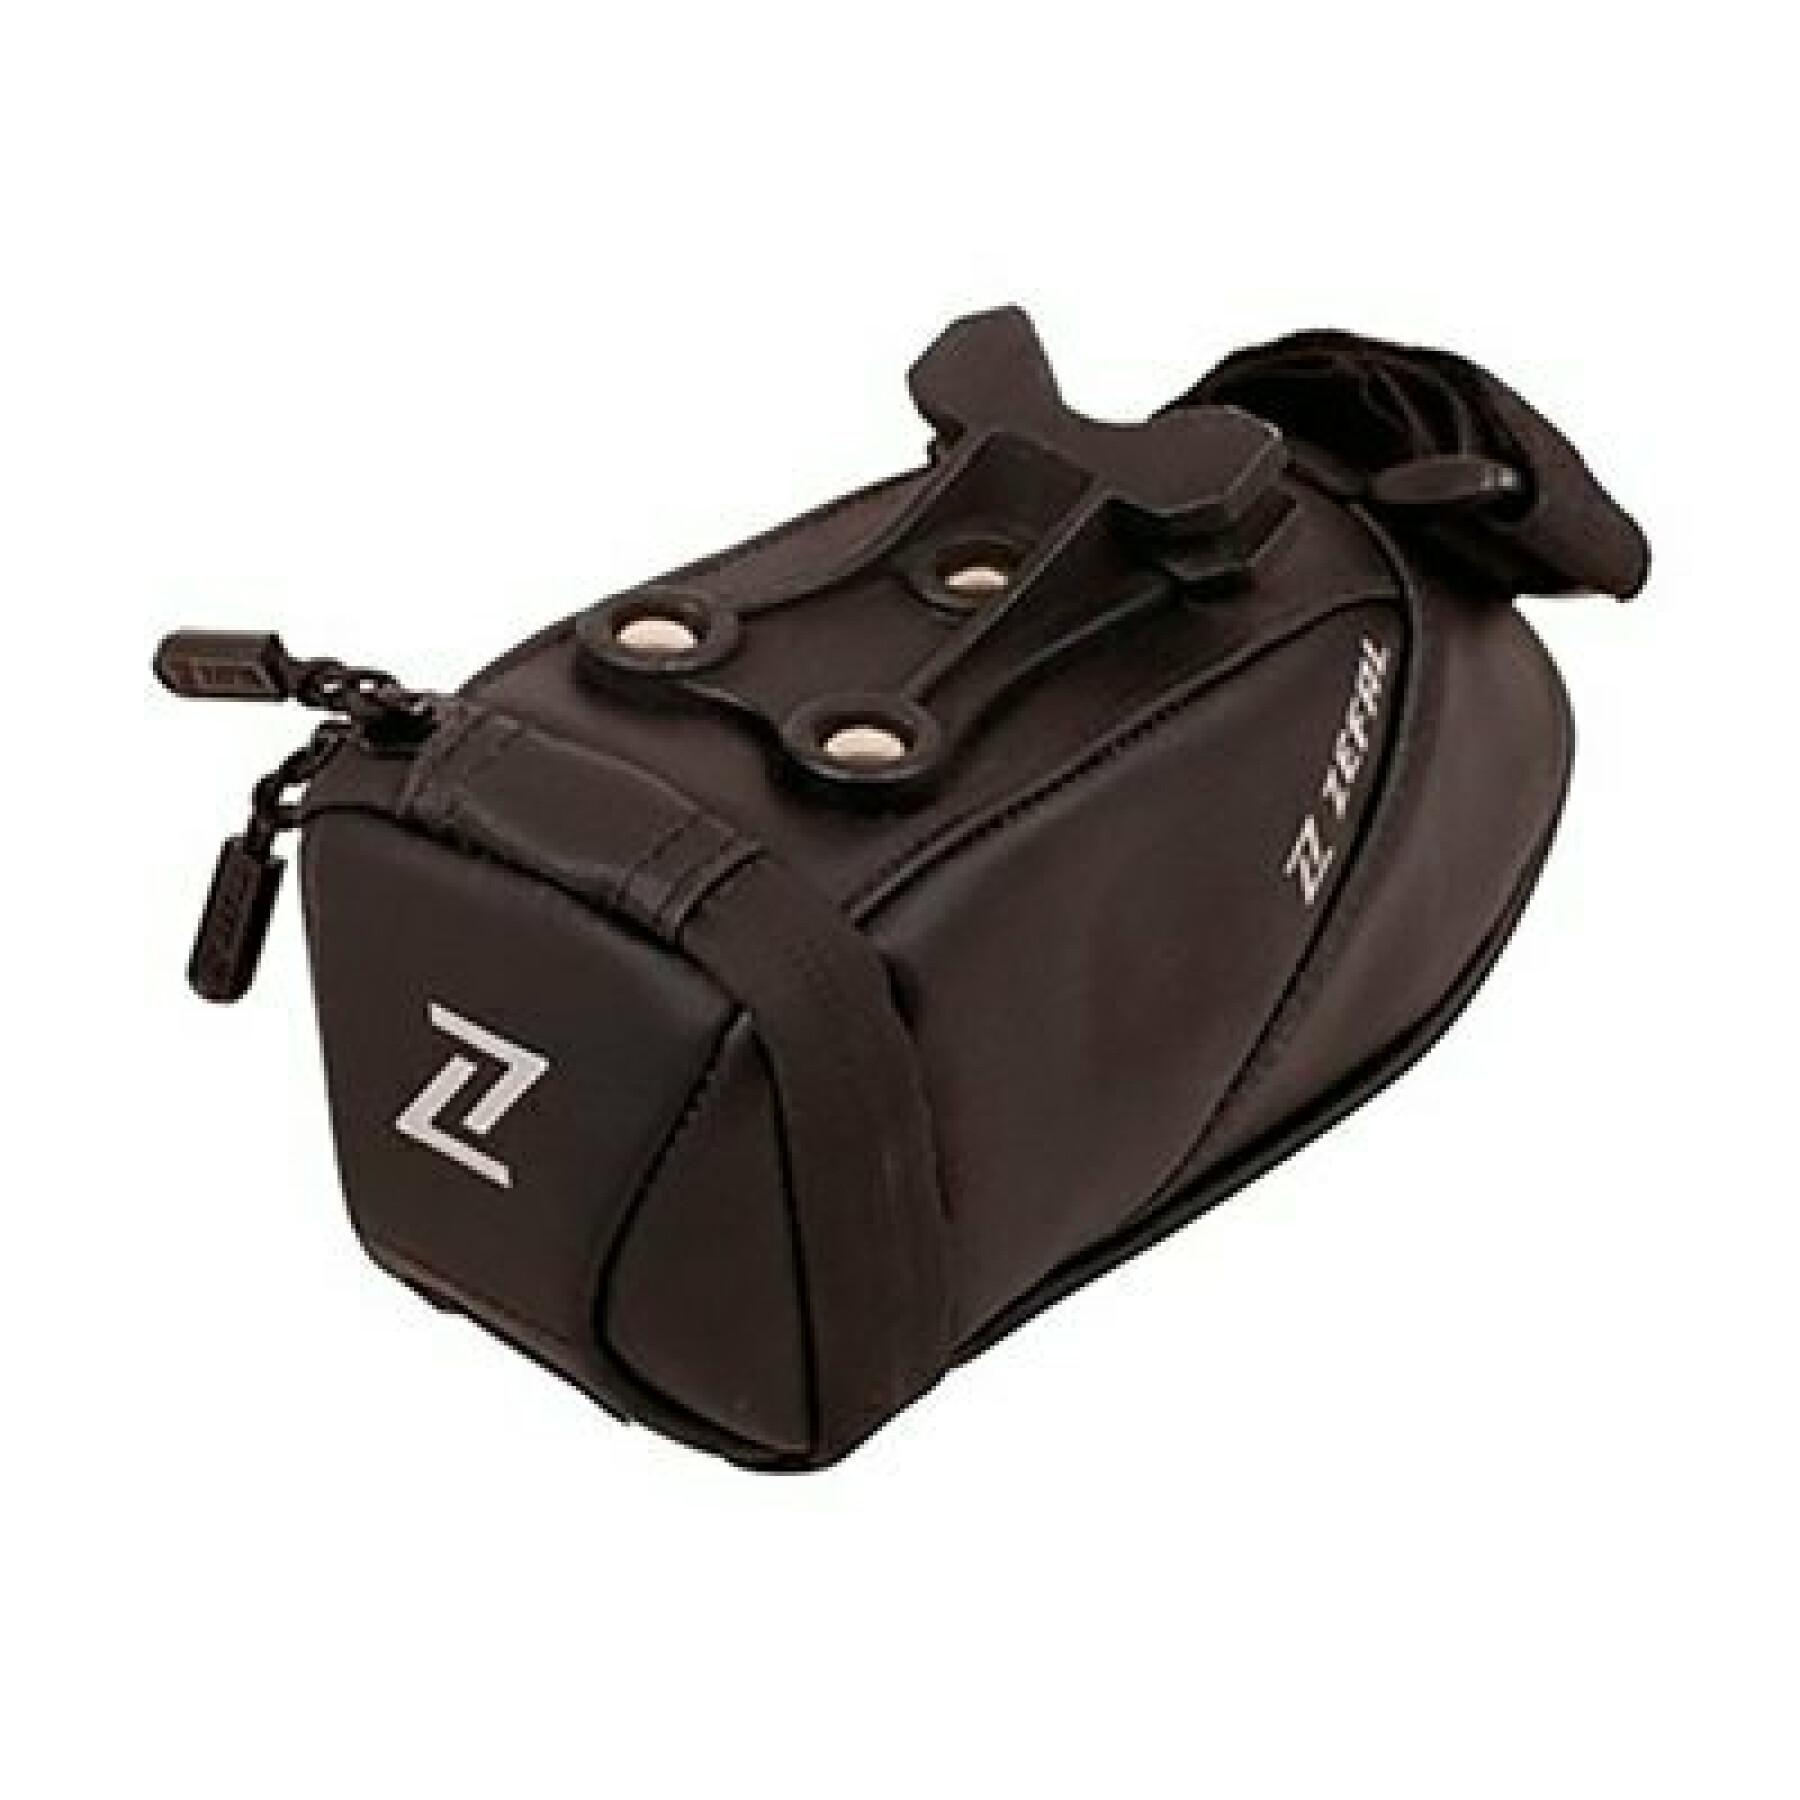 Sattelstützentasche Zefal Iron pack 2 s-tf